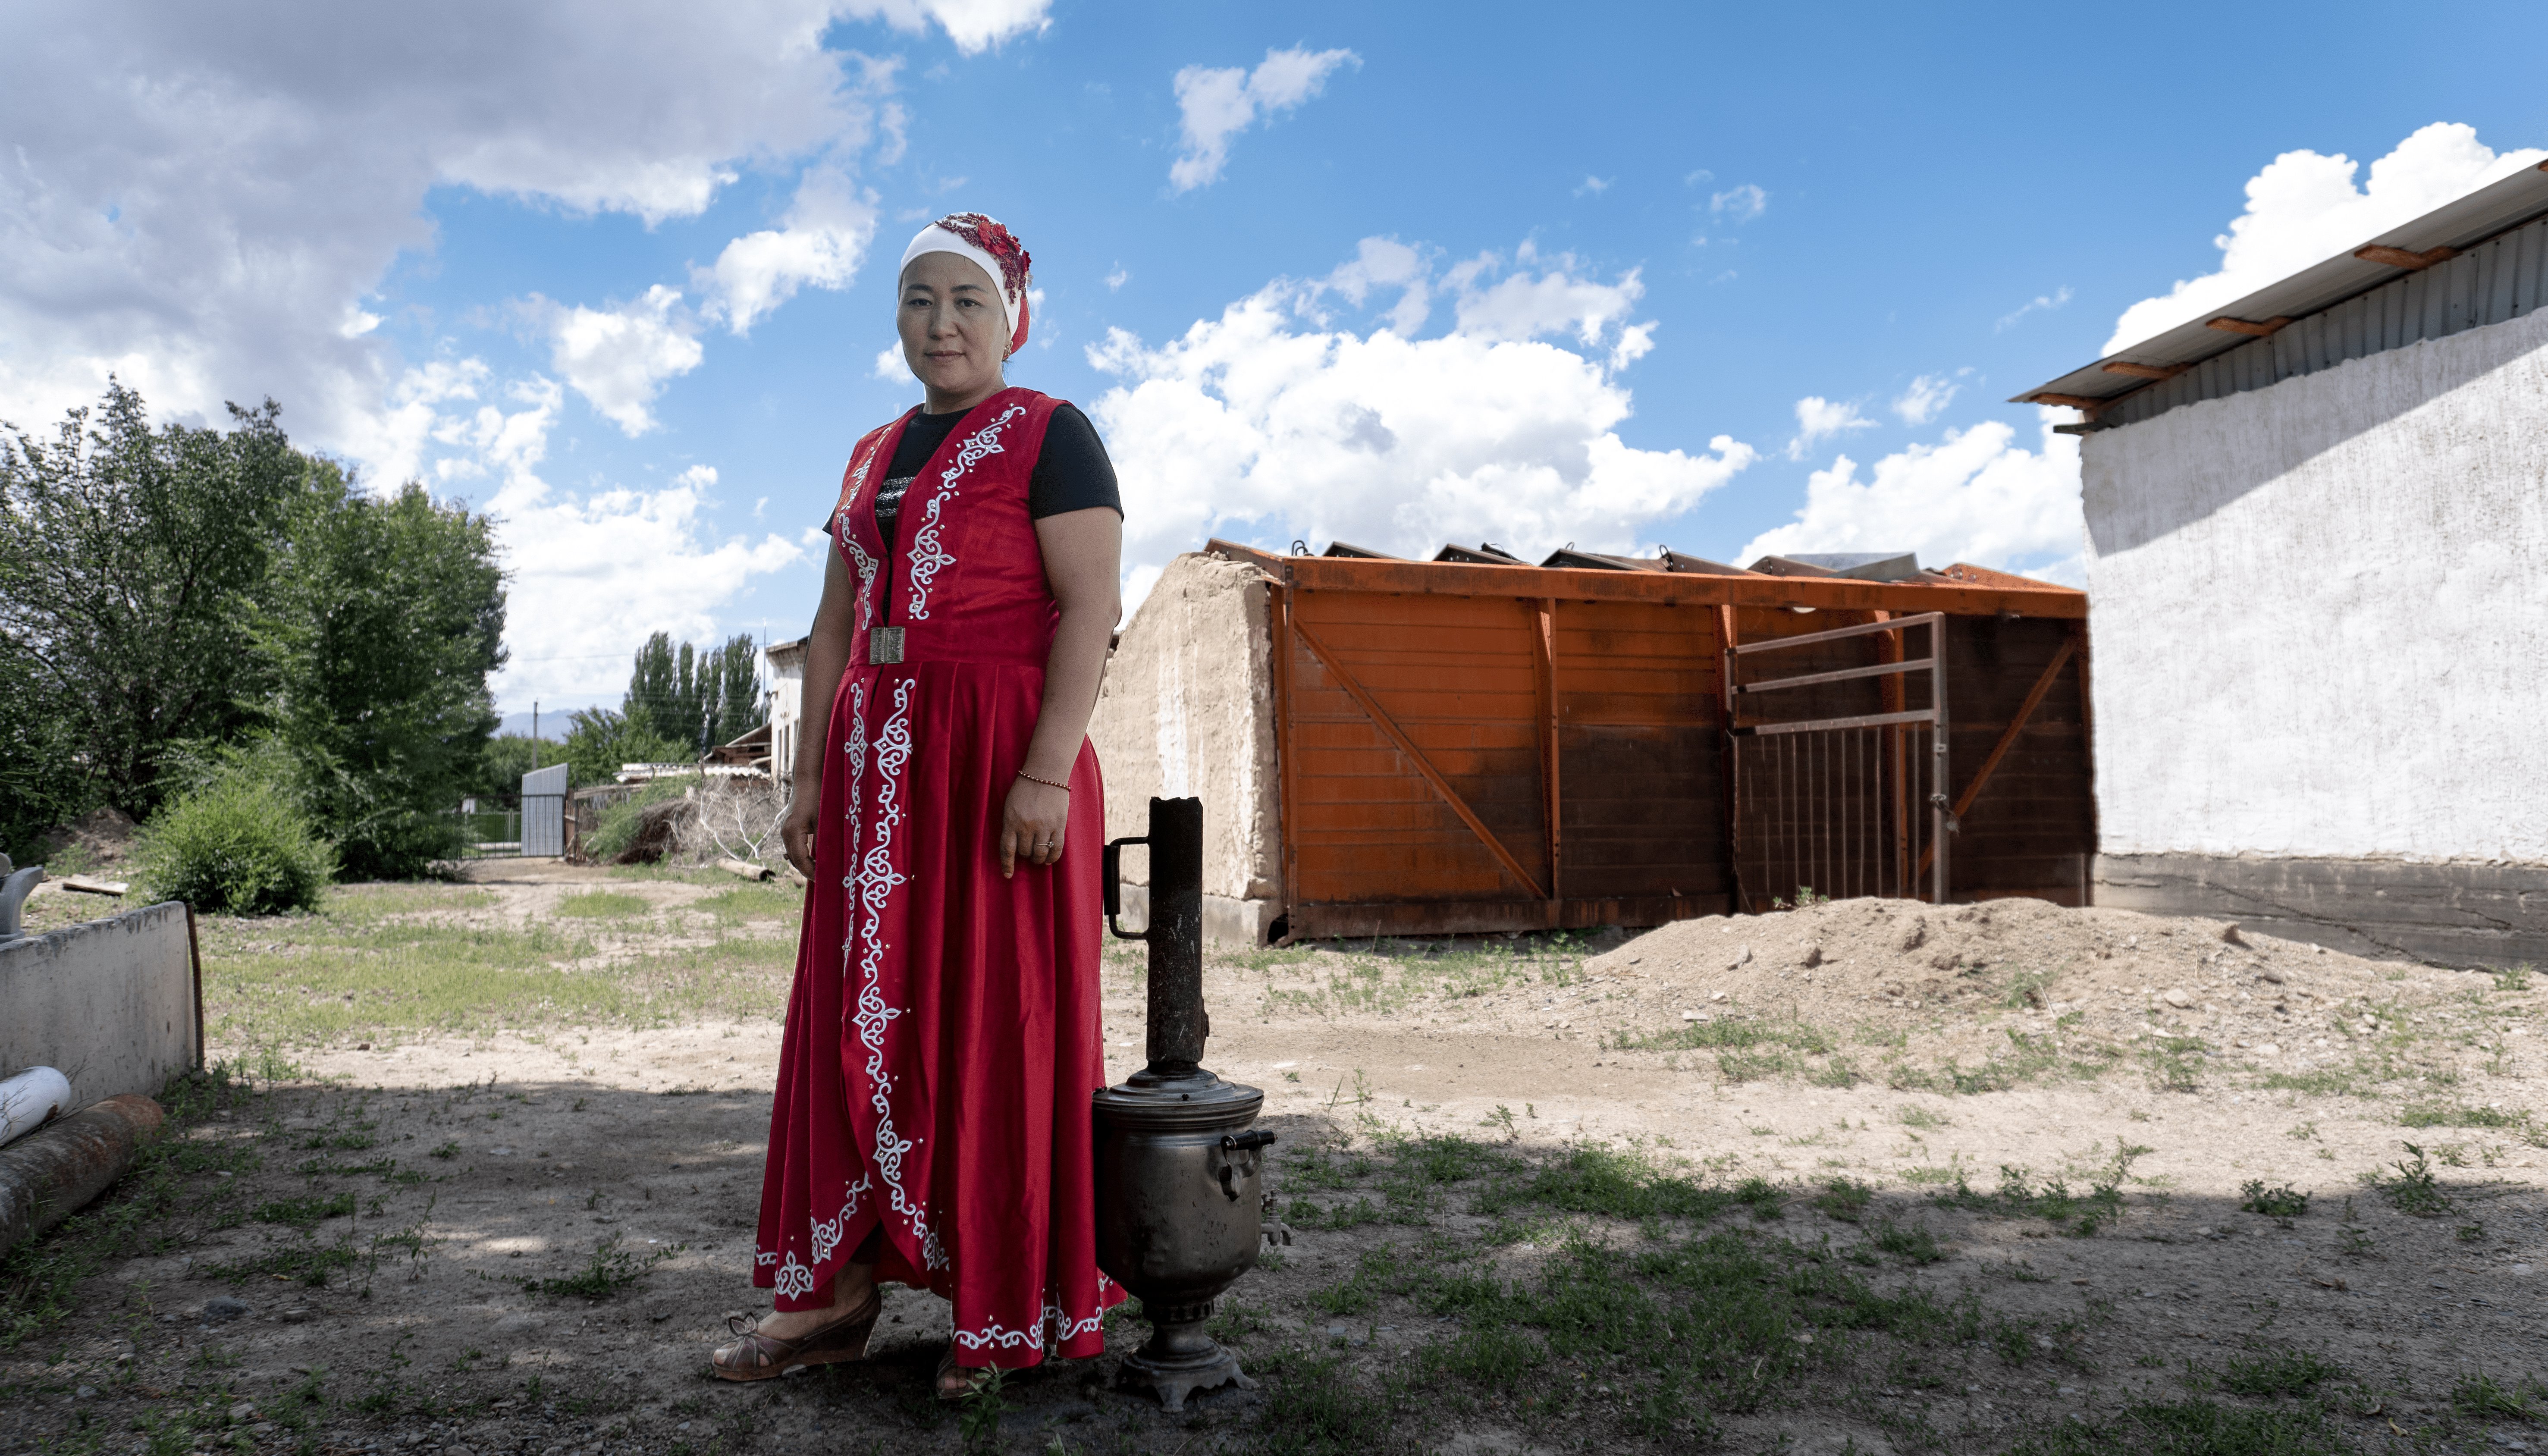 Read АУЫЛДЫҢ ӘЙЕЛ-КӘСІПКЕРЛЕРІ - ТАБИҒАТТЫҢ САҚШЫЛАРЫ: ӘСЕМНІҢ ӘЛЕМI by UNDP Kazakhstan